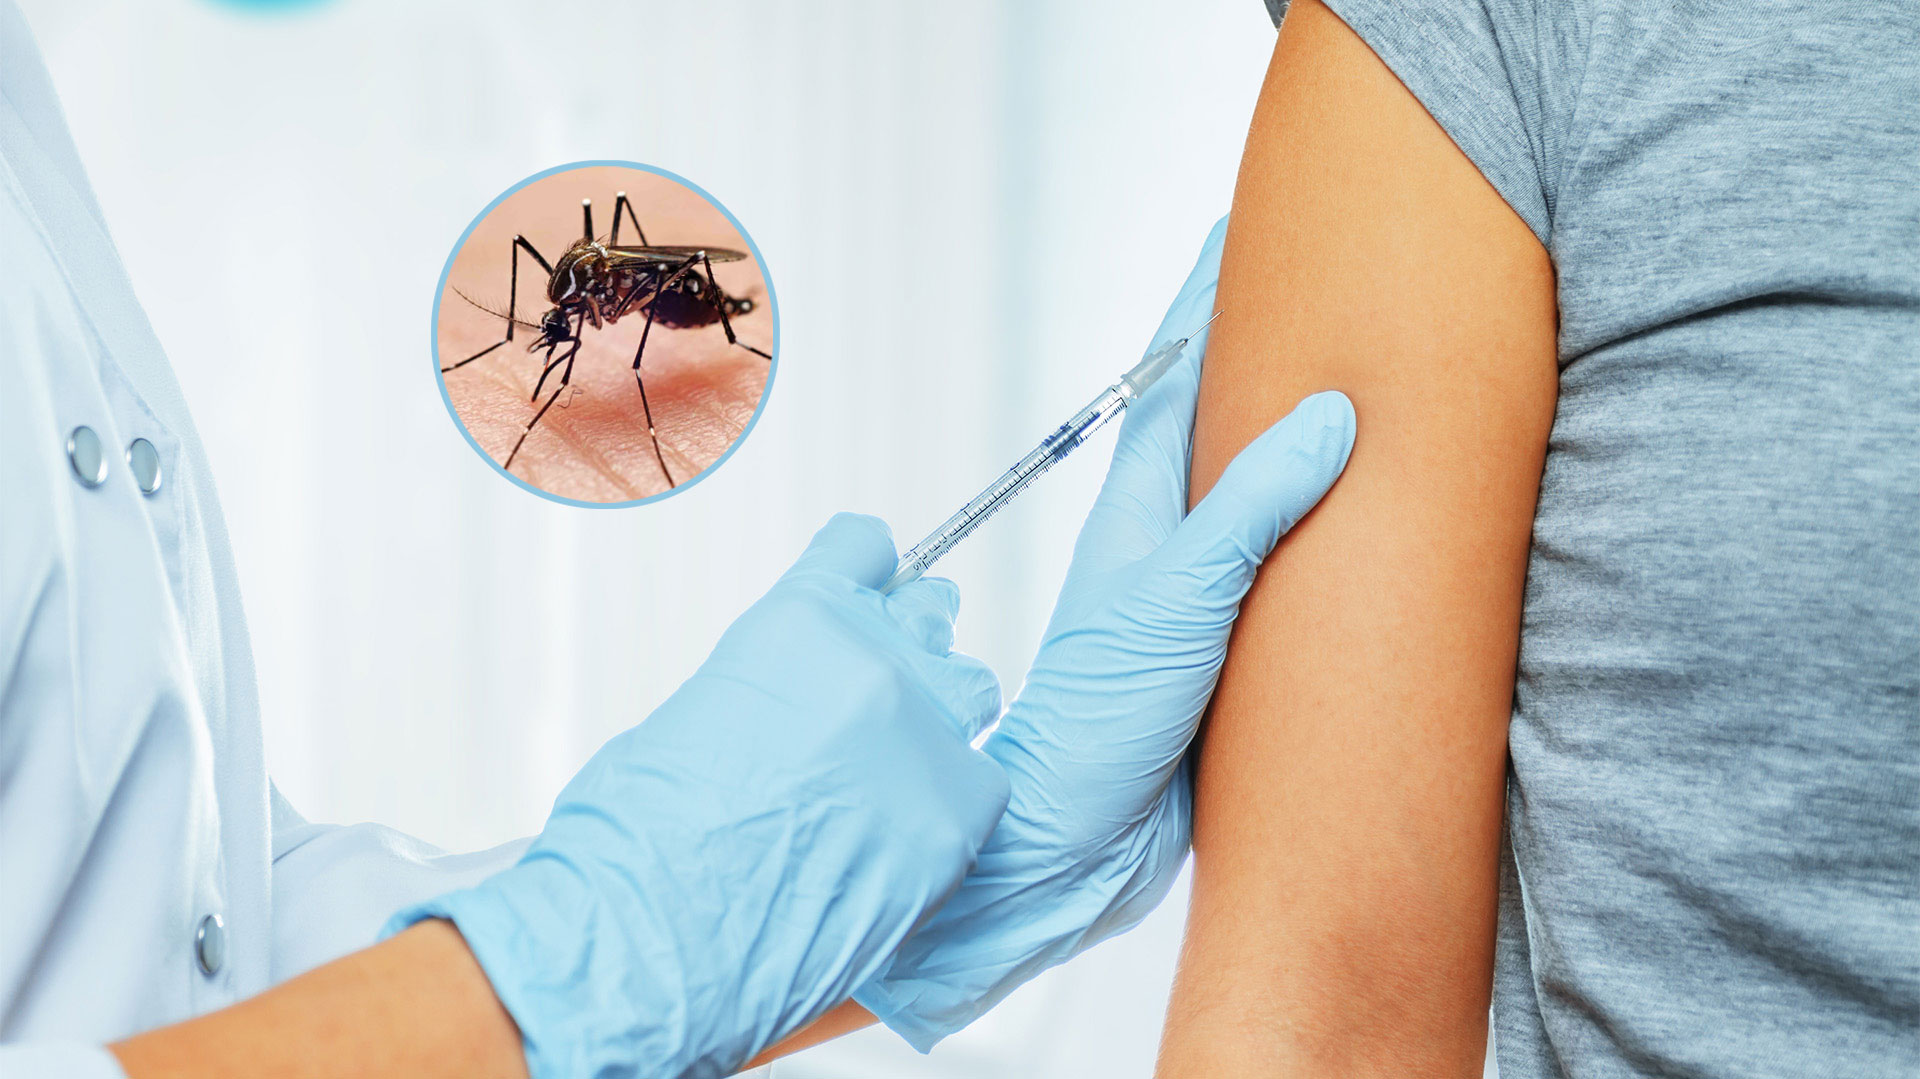 La ANMAT aprobó la vacuna contra el dengue: cuándo llegará al país y cómo  será su aplicación - Infobae